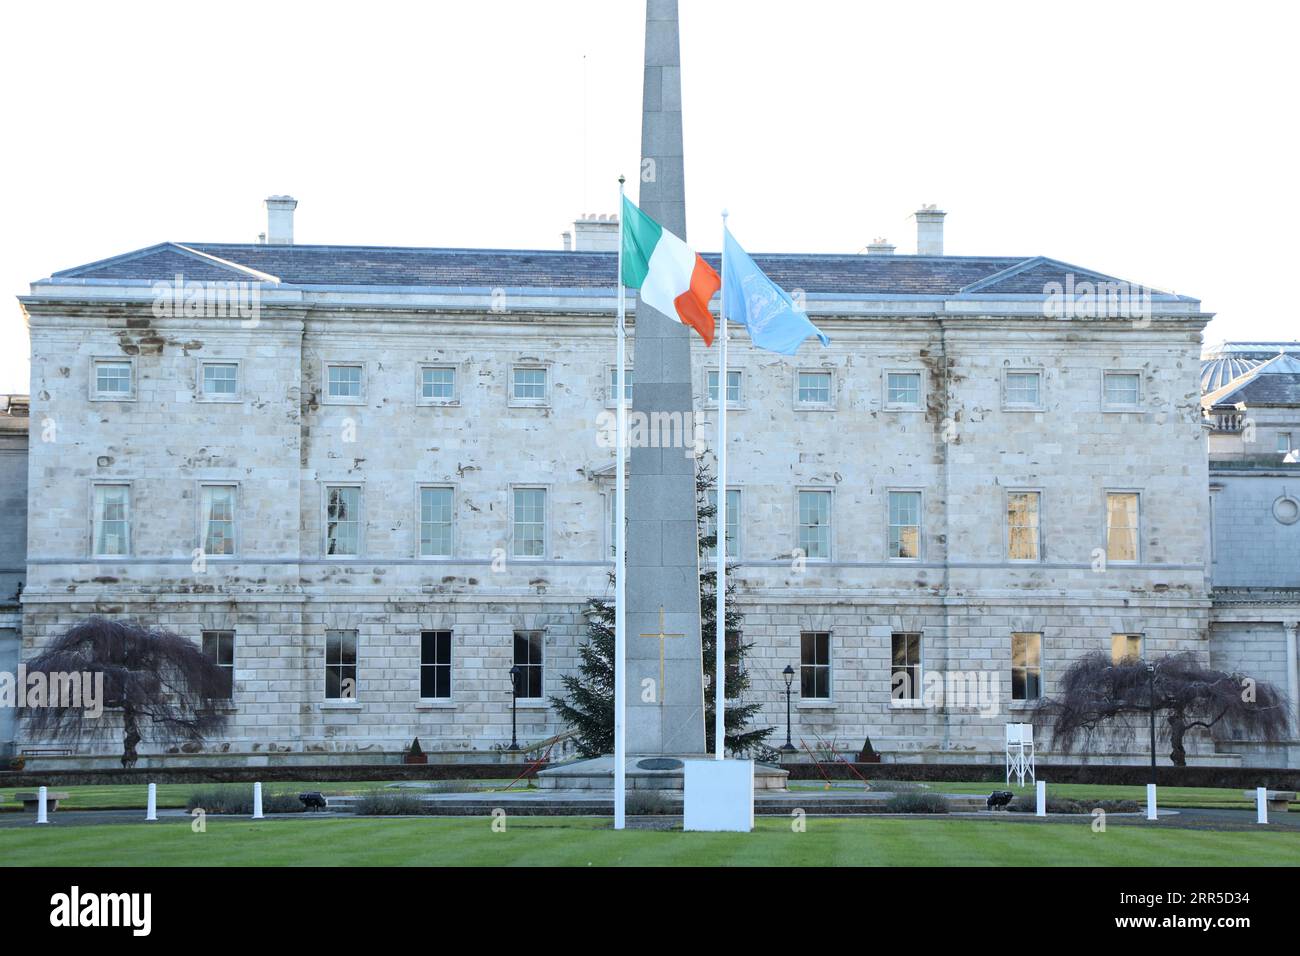 210101 -- DUBLINO, 1 gennaio 2021 -- la bandiera R delle Nazioni Unite è vista sventolare accanto alla bandiera nazionale irlandese a Leinster House a Dublino, Irlanda, 1 gennaio 2021. L'Irlanda ha preso il suo seggio come membro eletto del Consiglio di sicurezza delle Nazioni Unite per un mandato di due anni a partire dal 1° gennaio 2021, ha detto il Dipartimento degli affari Esteri del paese venerdì. IRLANDA-DUBLINO-MEMBRO DEL CONSIGLIO DI SICUREZZA DELLE NAZIONI UNITE XINHUA PUBLICATIONXNOTXINXCHN Foto Stock